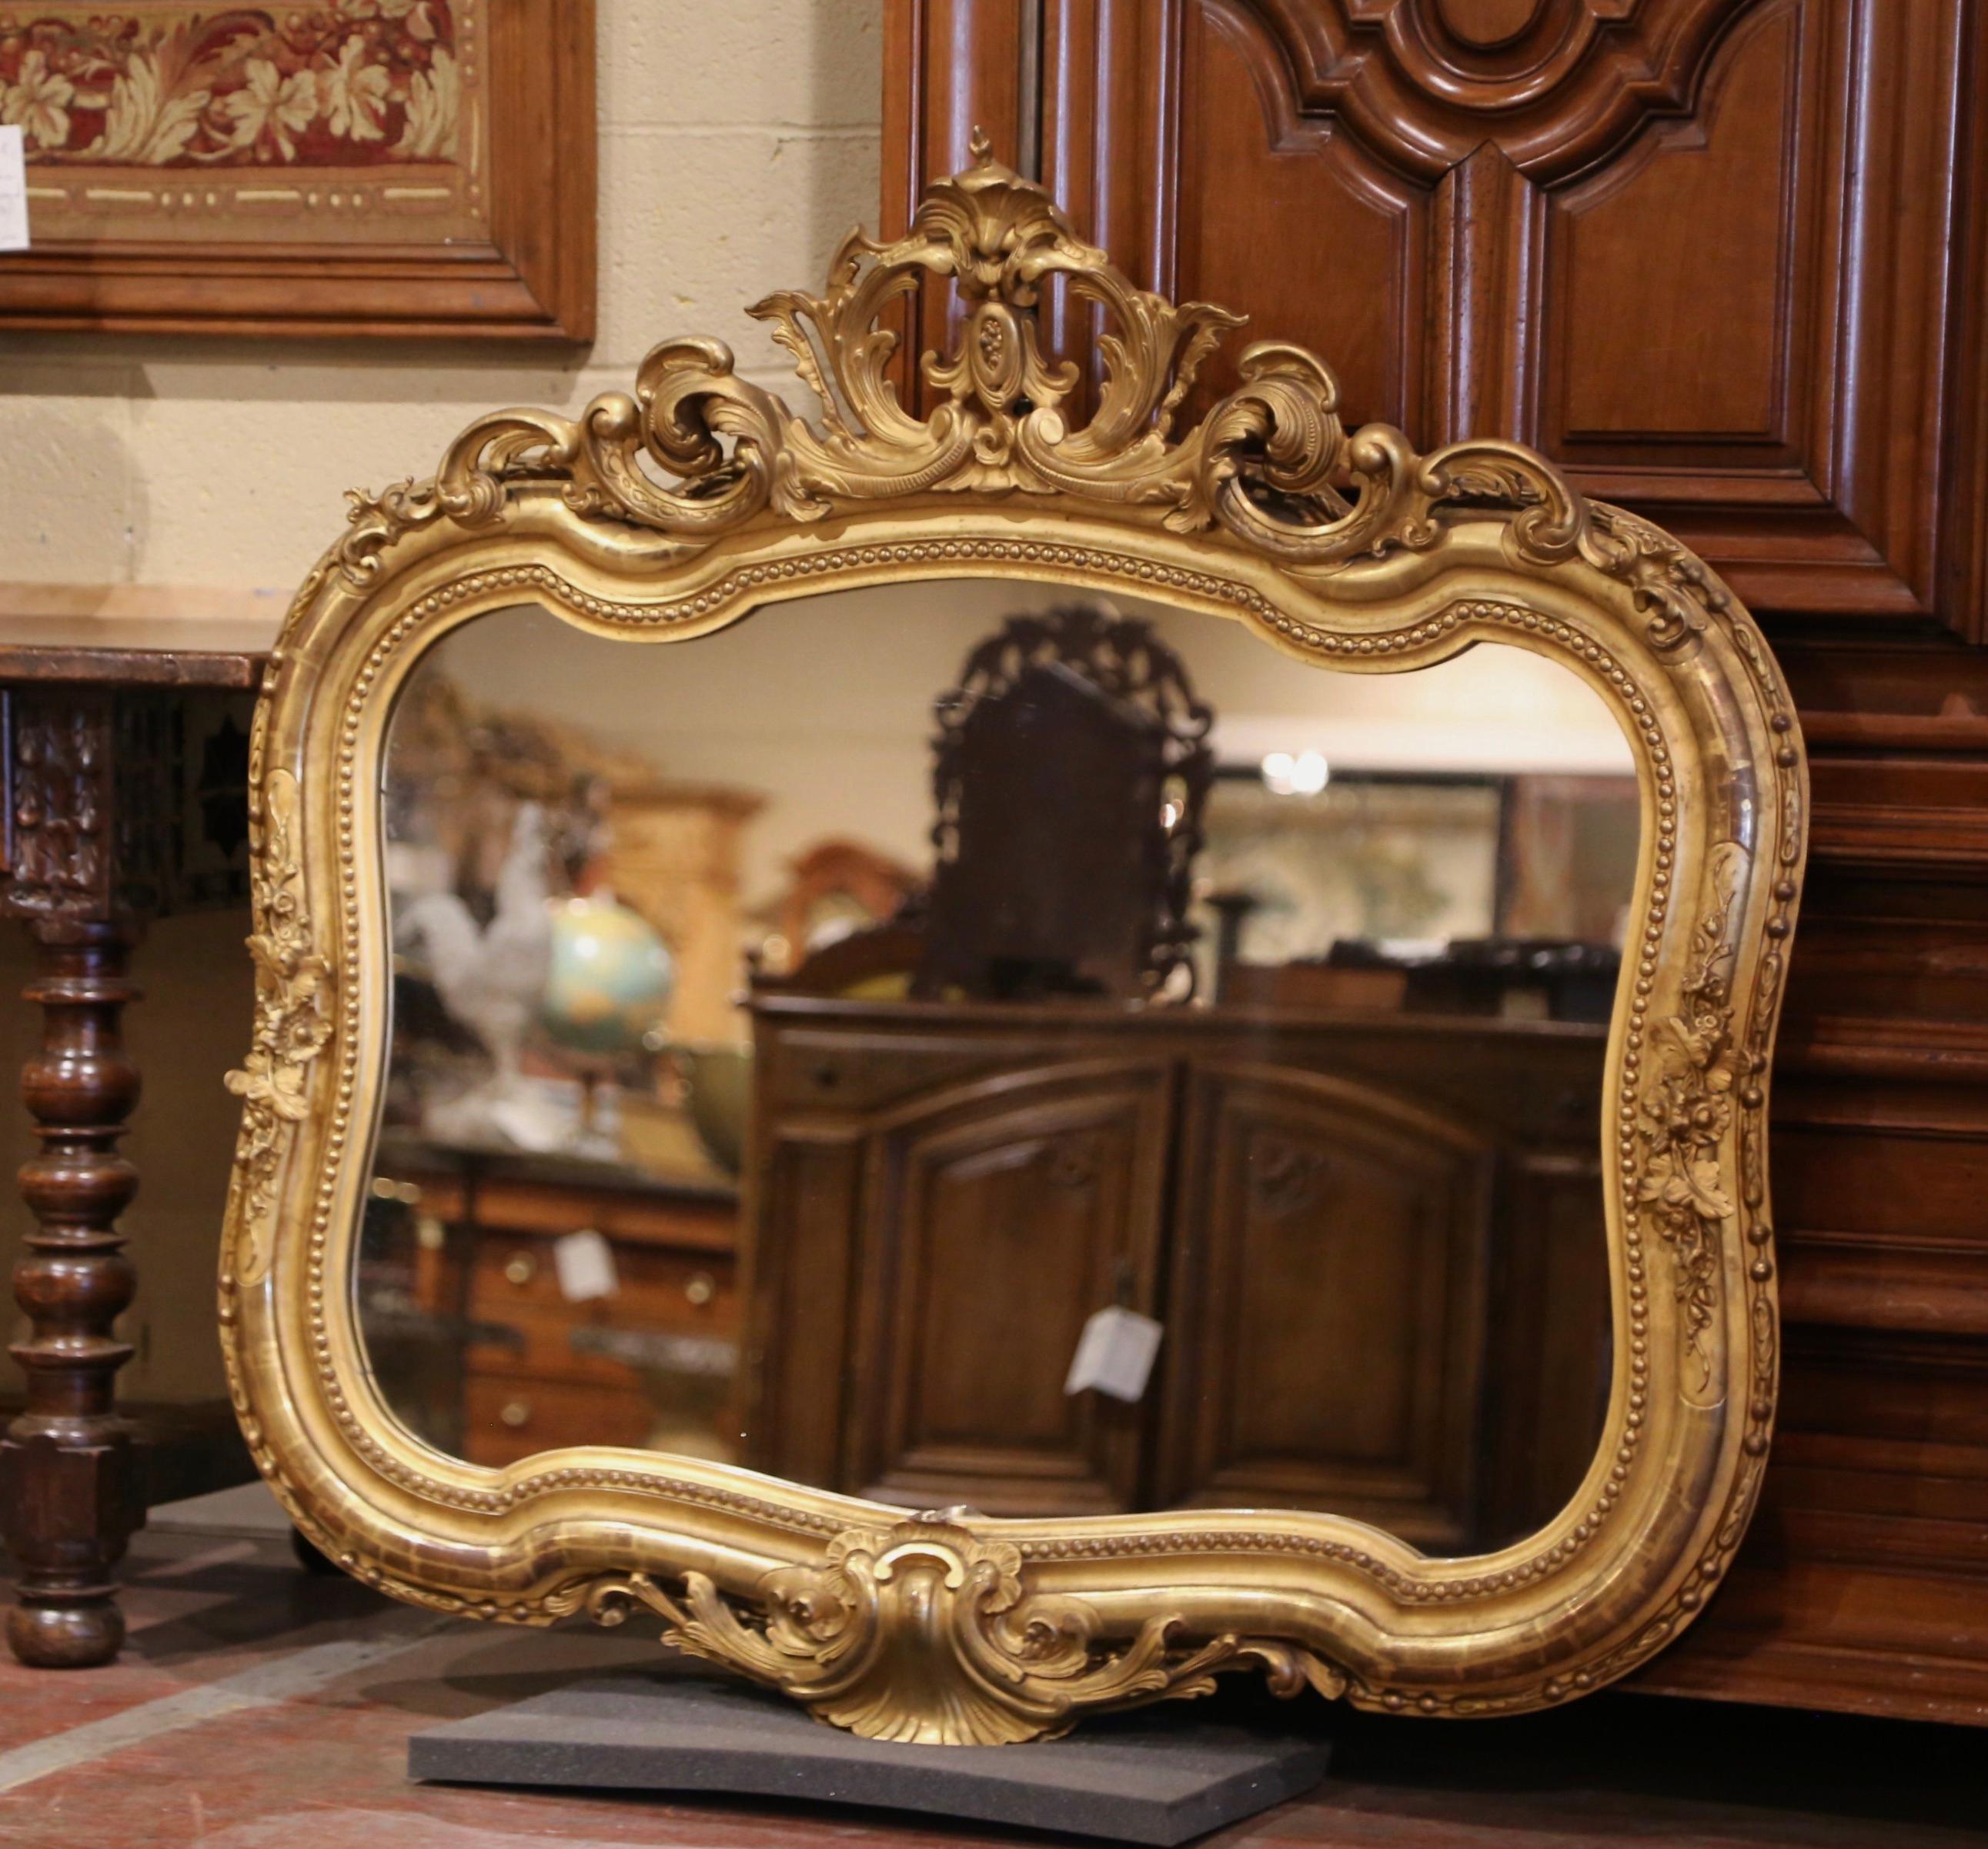 Dekorieren Sie ein Badezimmer, einen Eingang oder einen Flur mit diesem eleganten antiken Spiegel. Der um 1860 in Frankreich gefertigte, horizontale Wandspiegel ist mit einer handgeschnitzten, durchbrochenen Kartusche am Giebel verziert, die in der